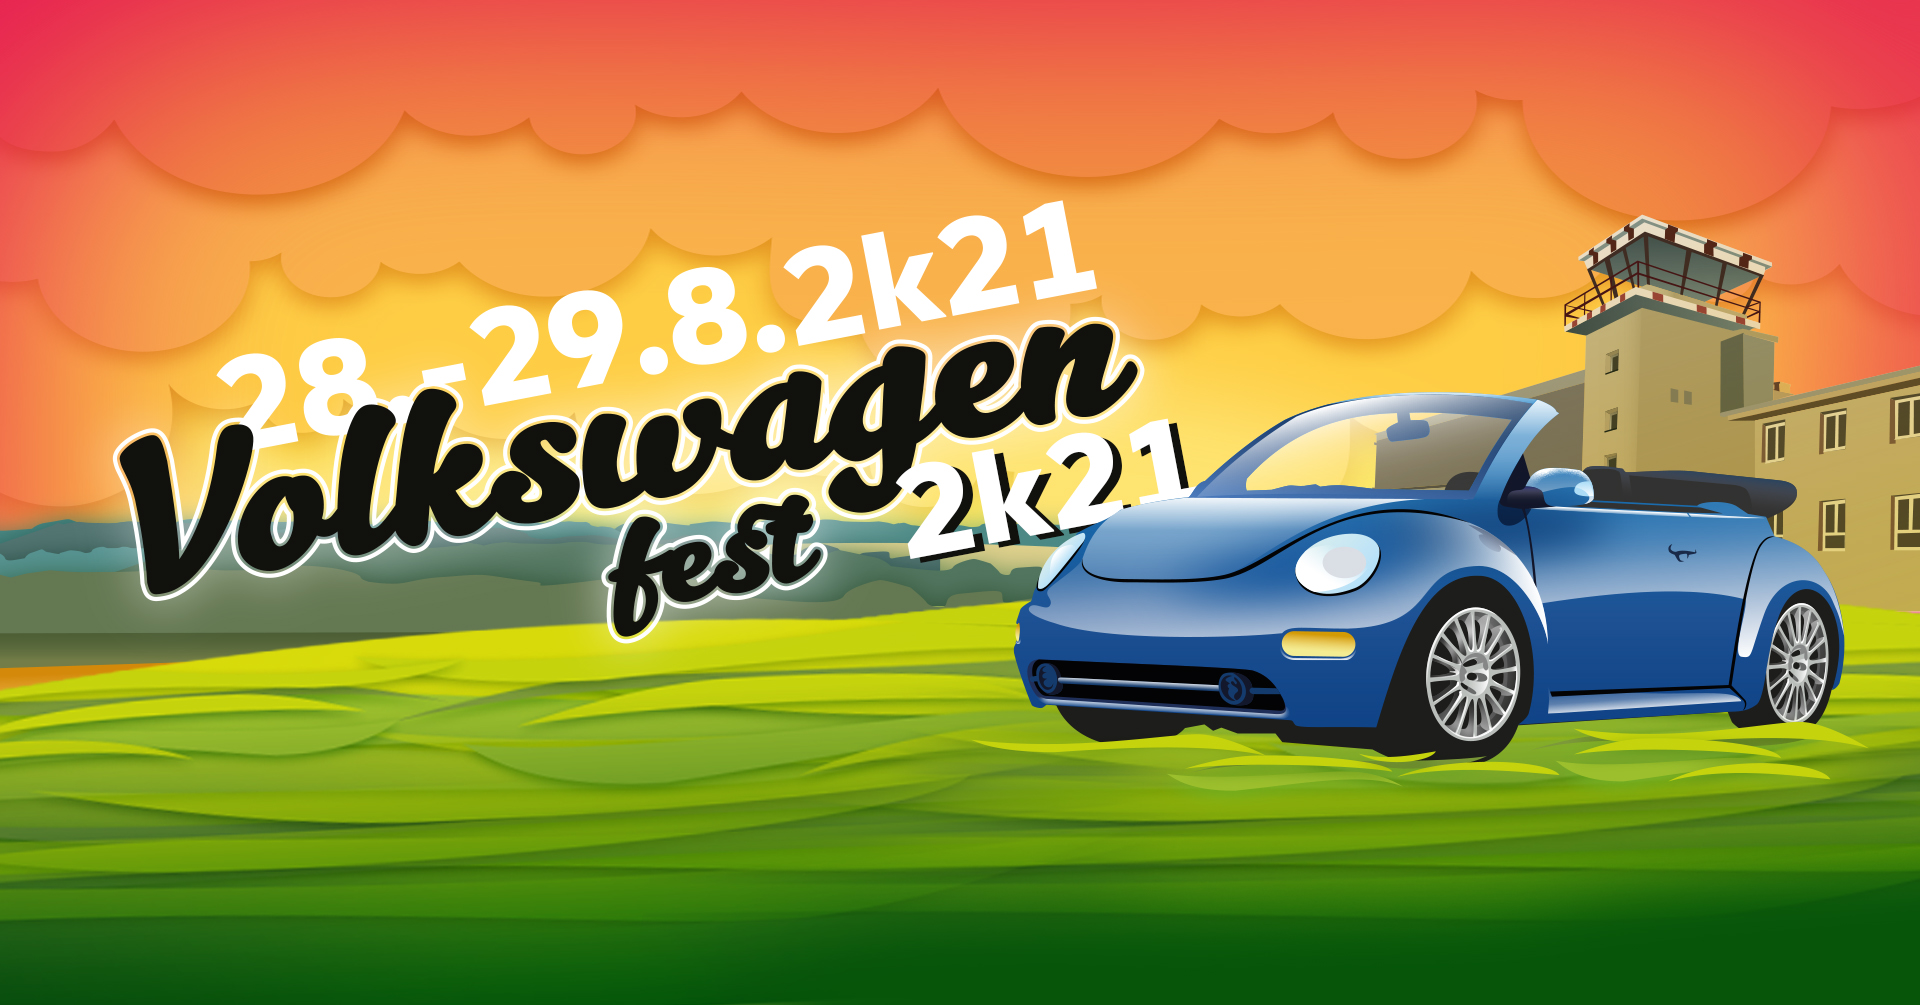 Volkswagen Fest 2k21